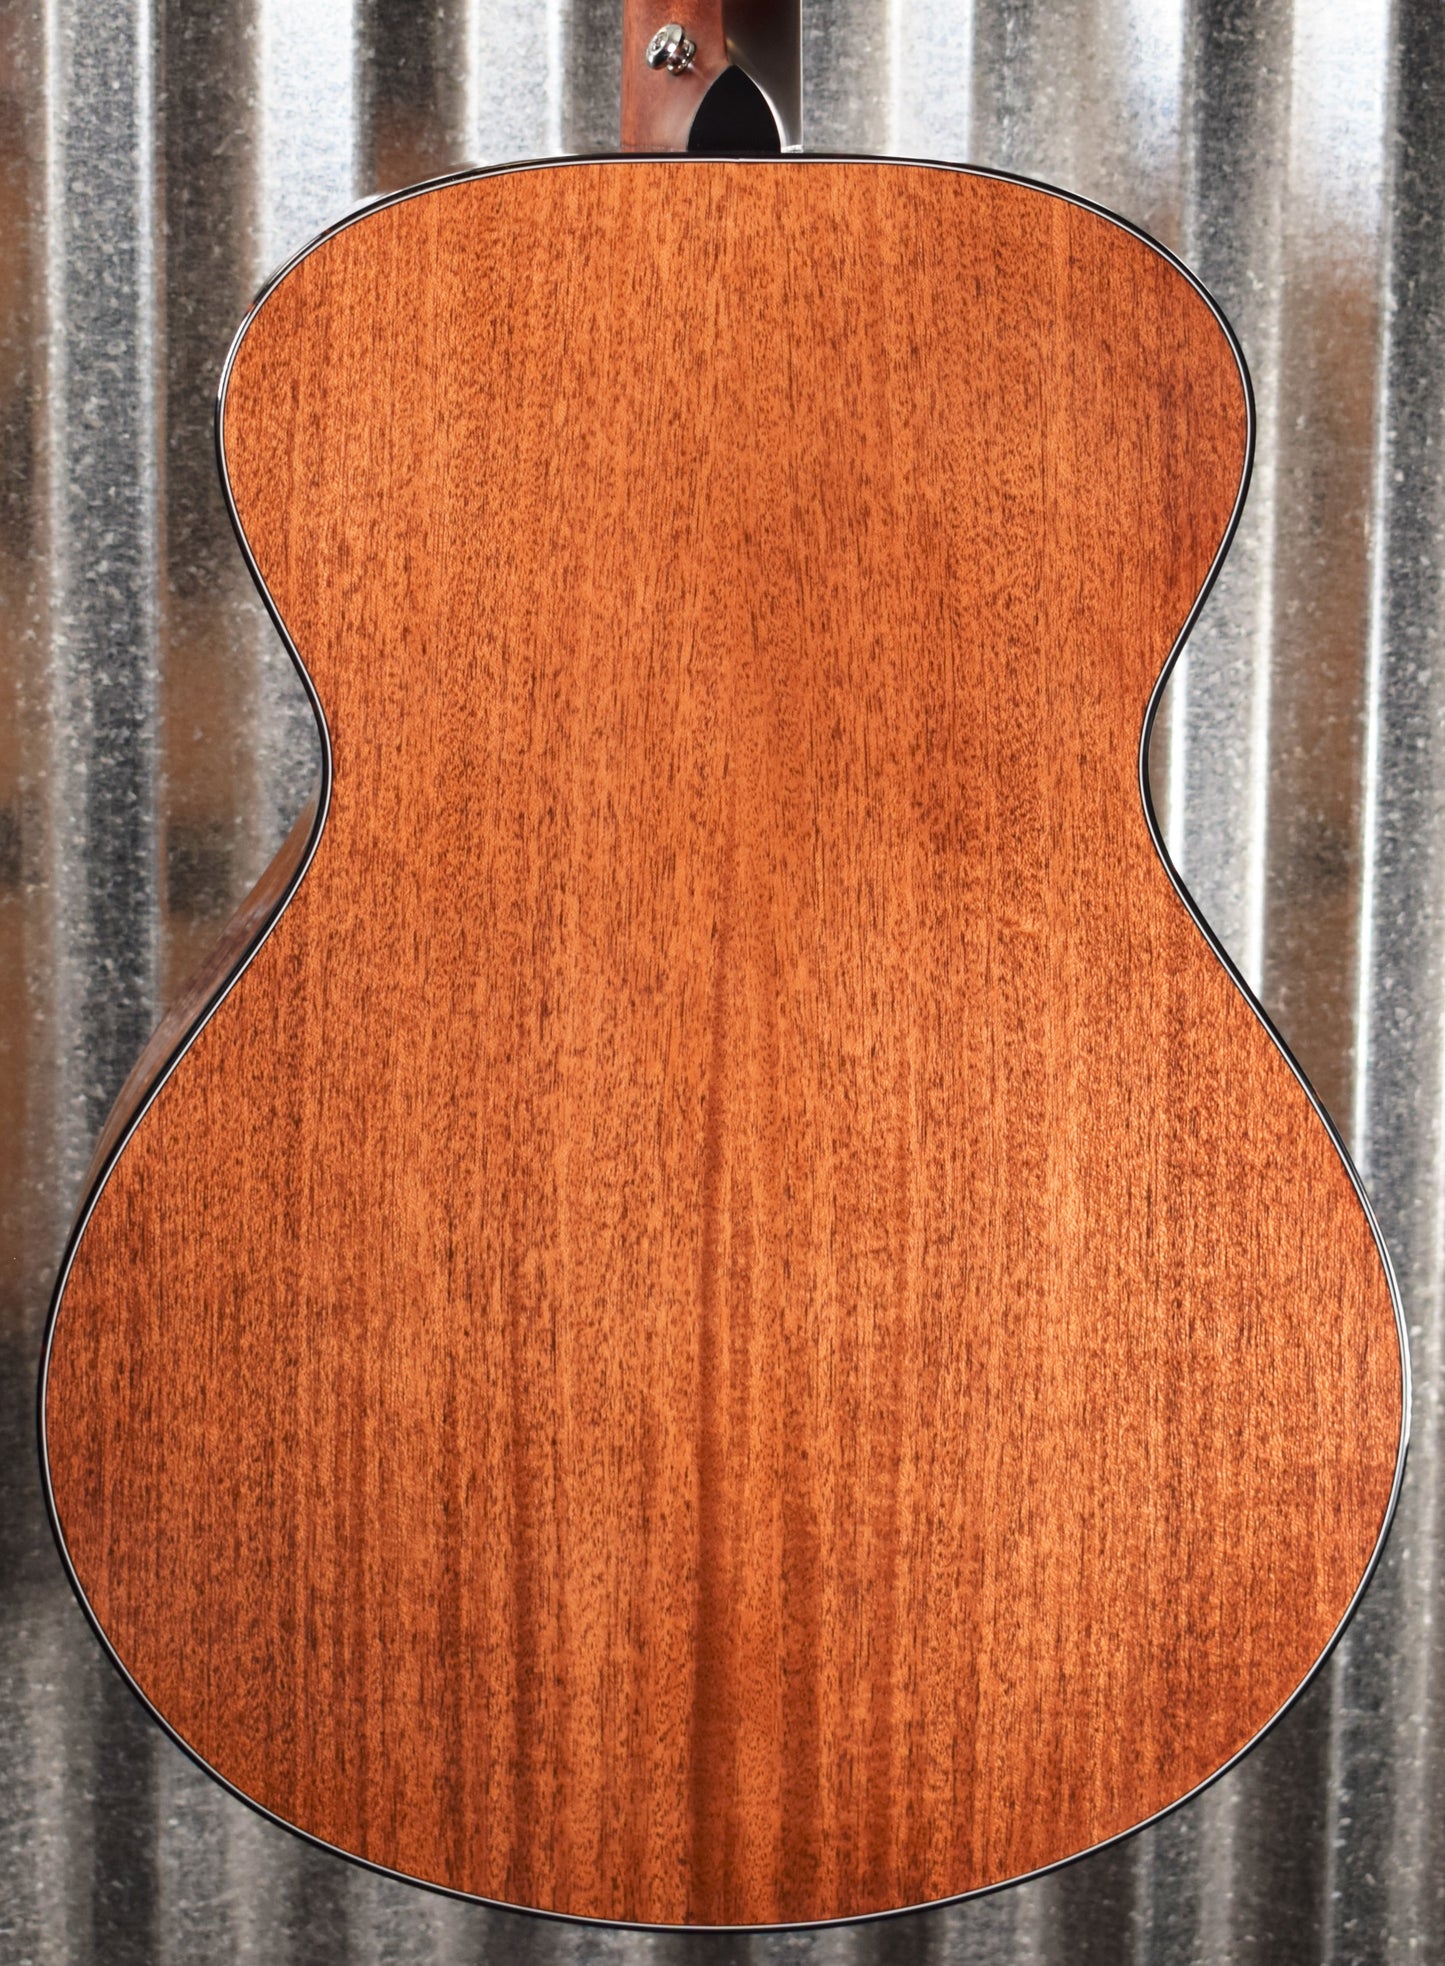 Breedlove Signature Concert Copper E Jeff Bridges Mahogany Acoustic Electric Guitar & Bag B Stock #9739